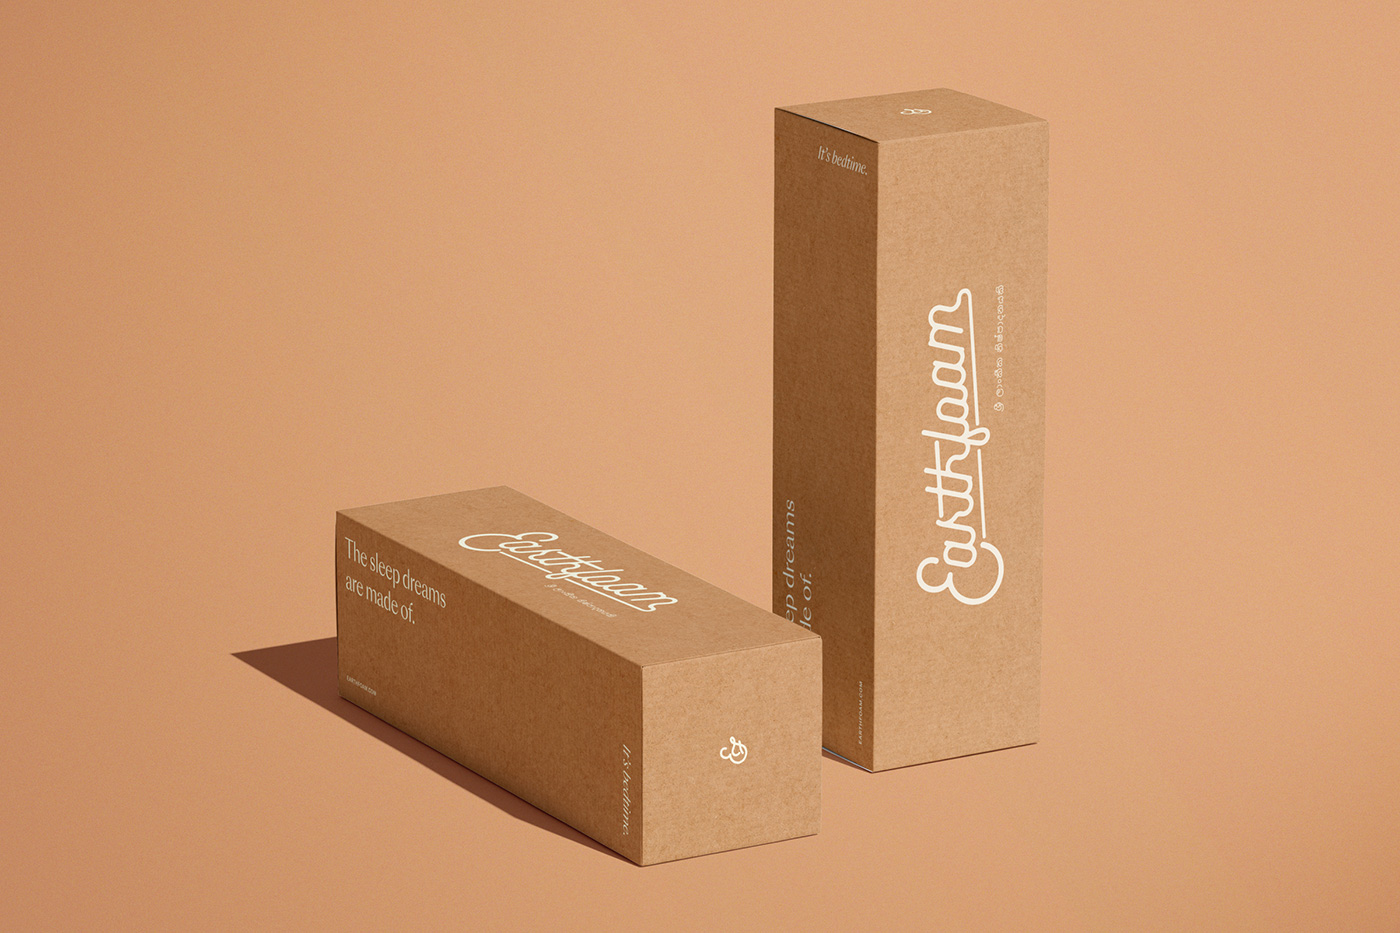 Earthfoam packaging